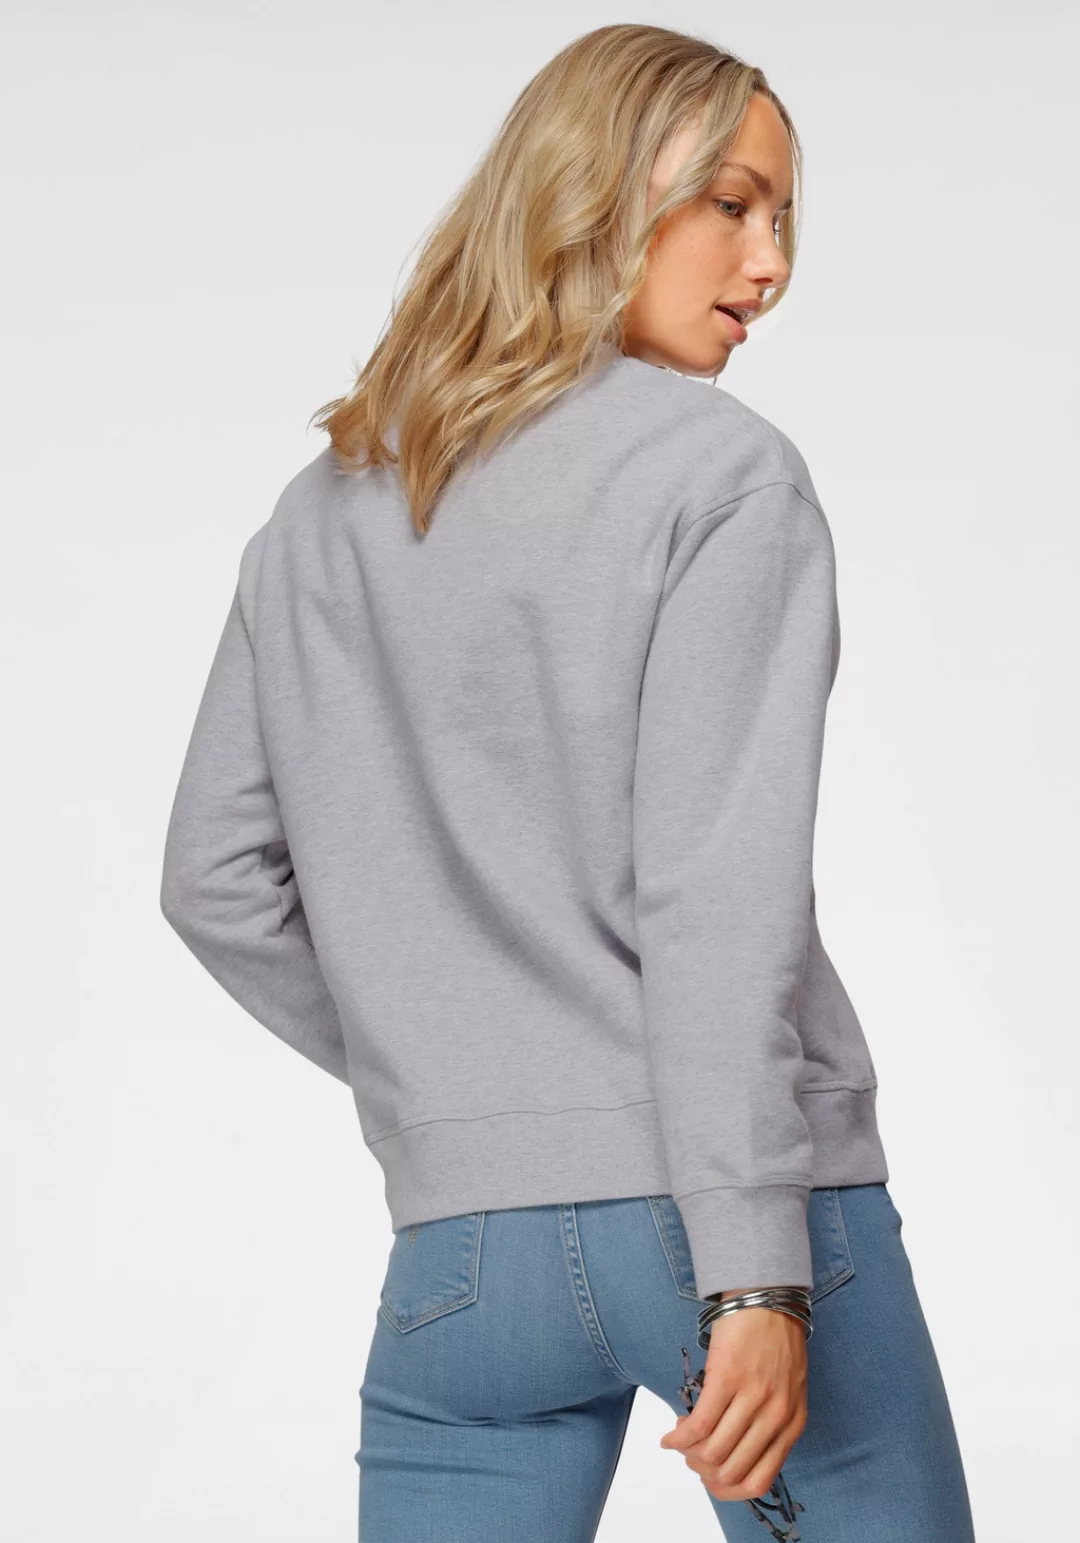 Levis Sweatshirt "Graphic Standard Crew" günstig online kaufen